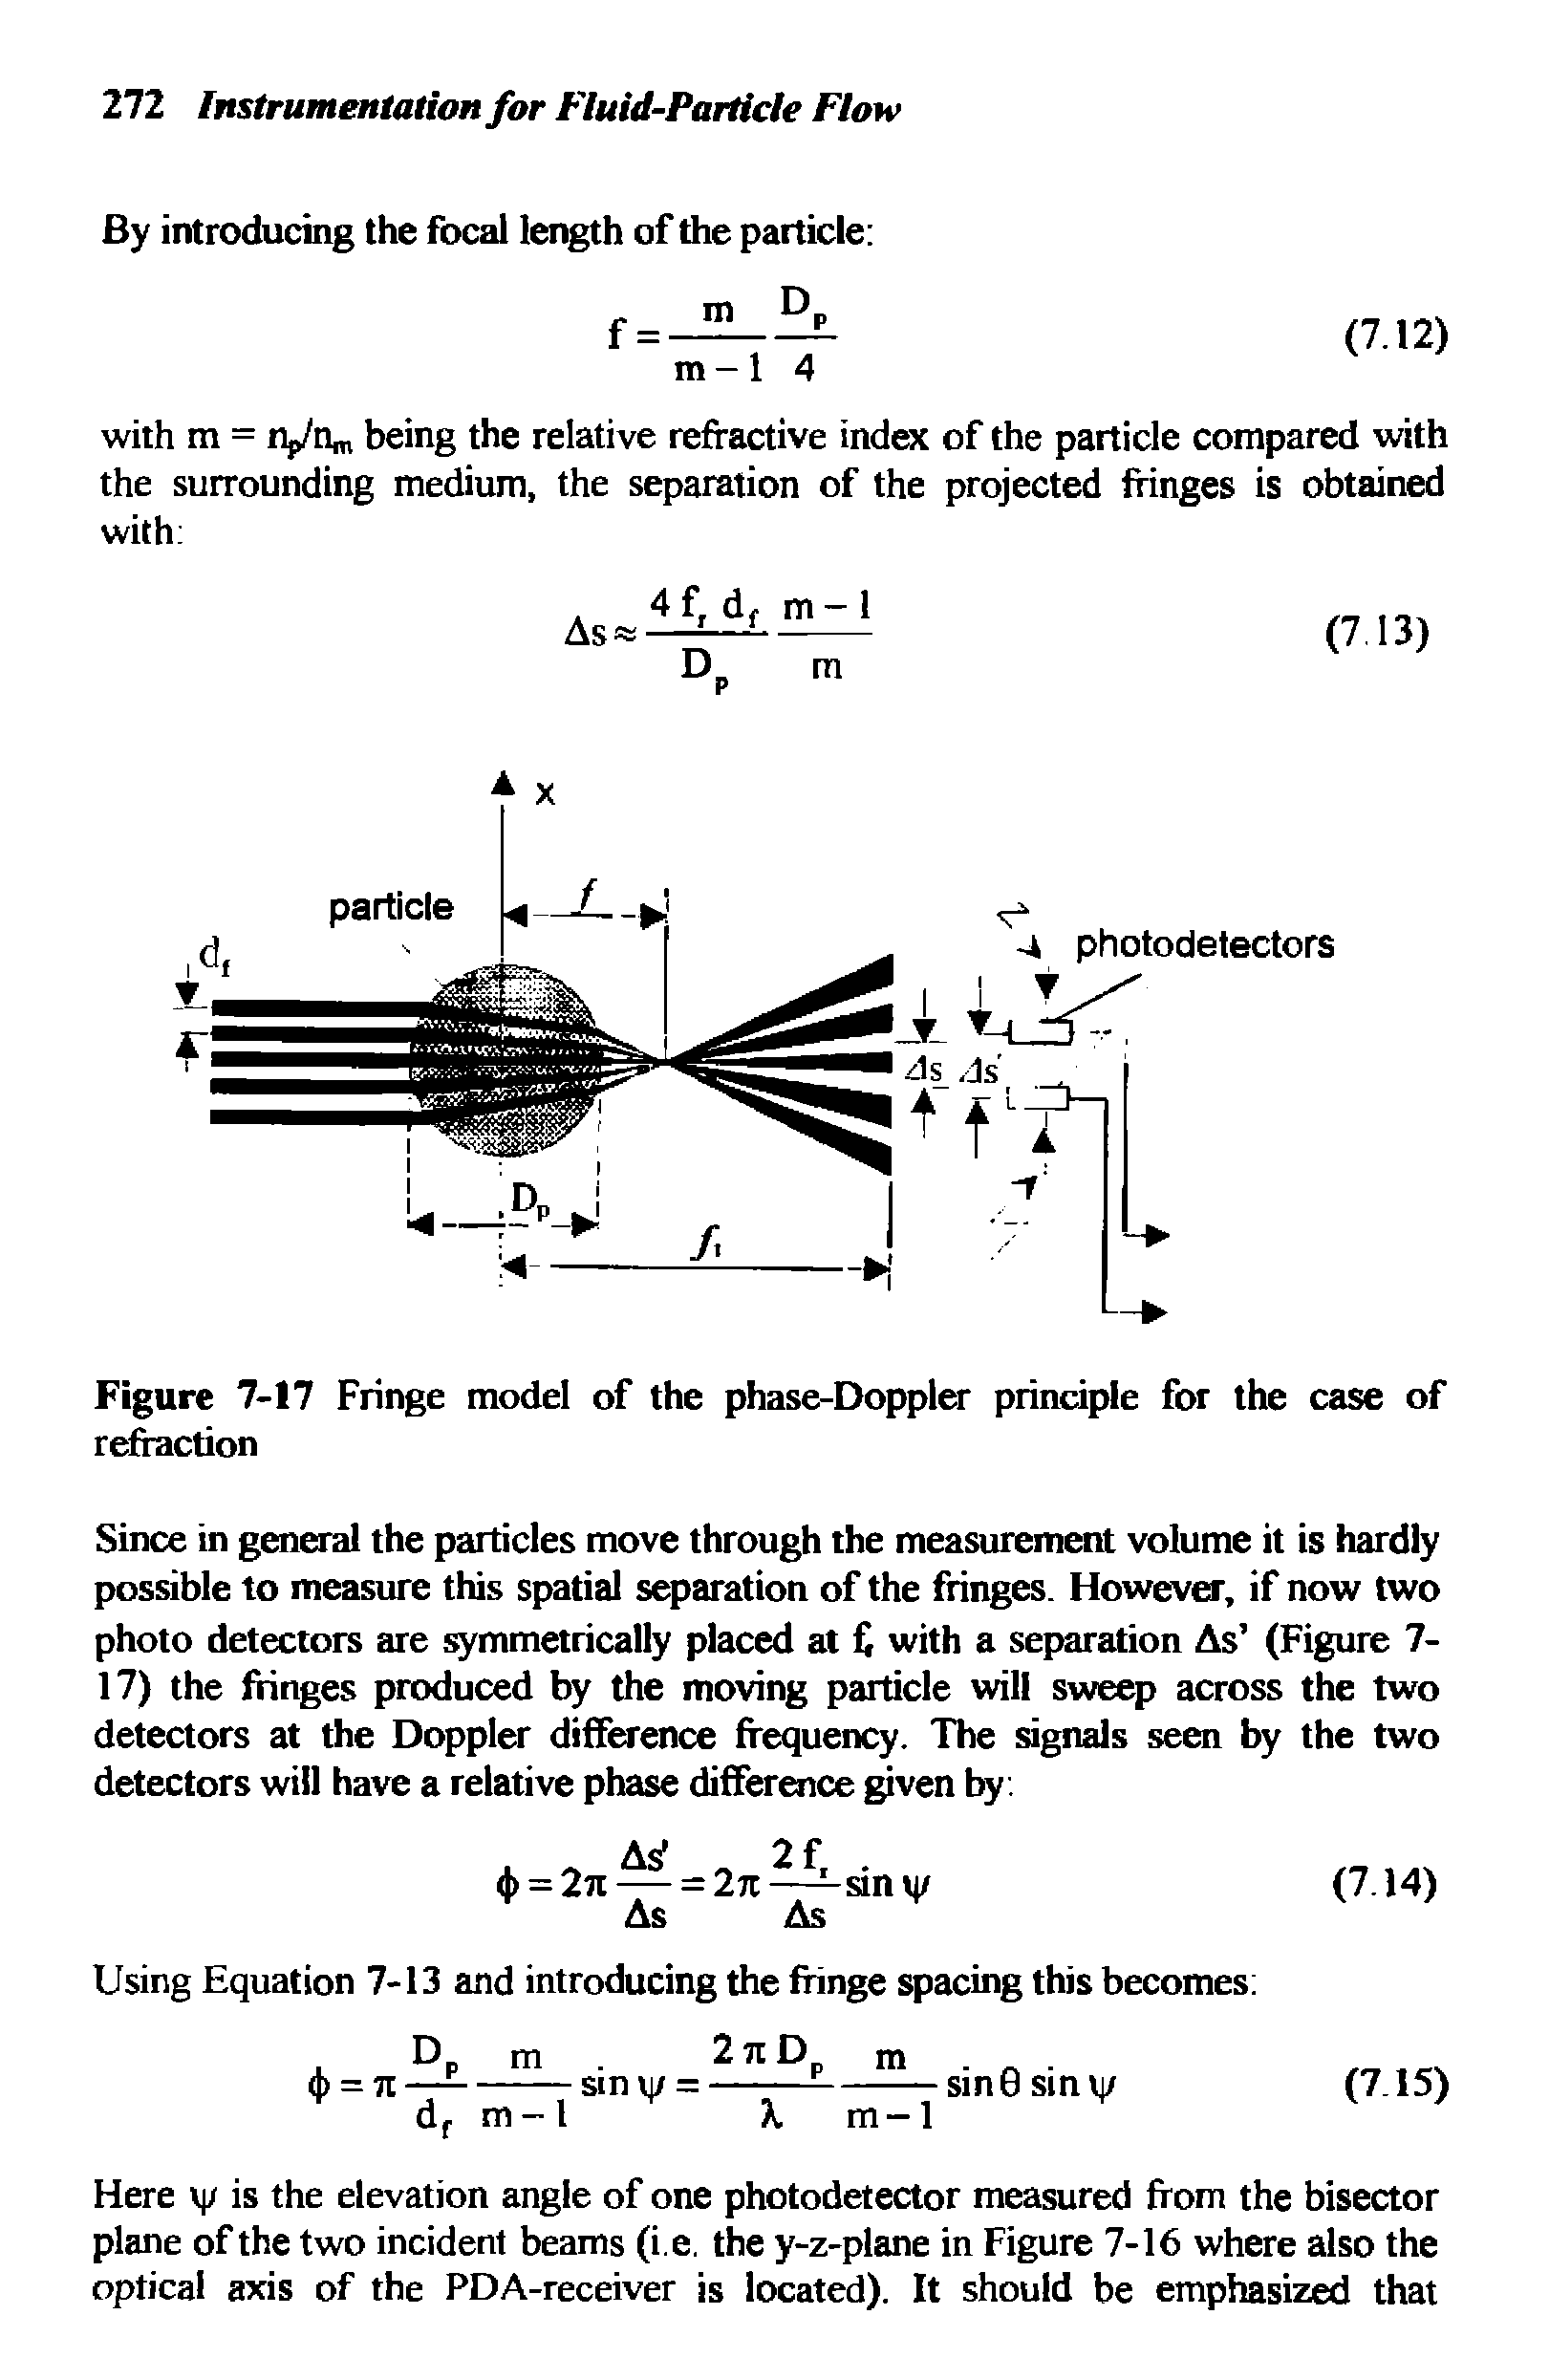 Figure 7-17 Fringe model of the phase-Doppler principle for the case of refraction...